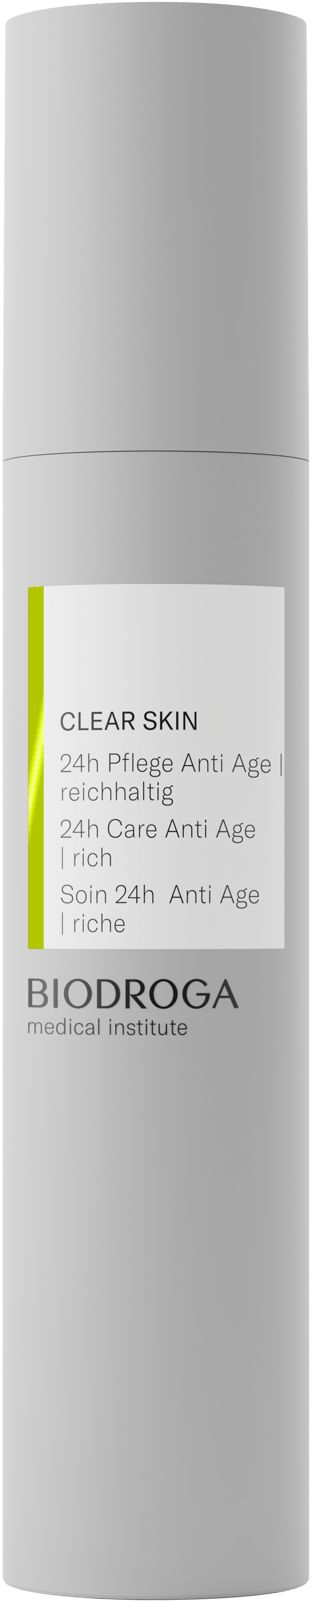 CLEAR SKIN 24h Anti Aging Pflege unreine Haut